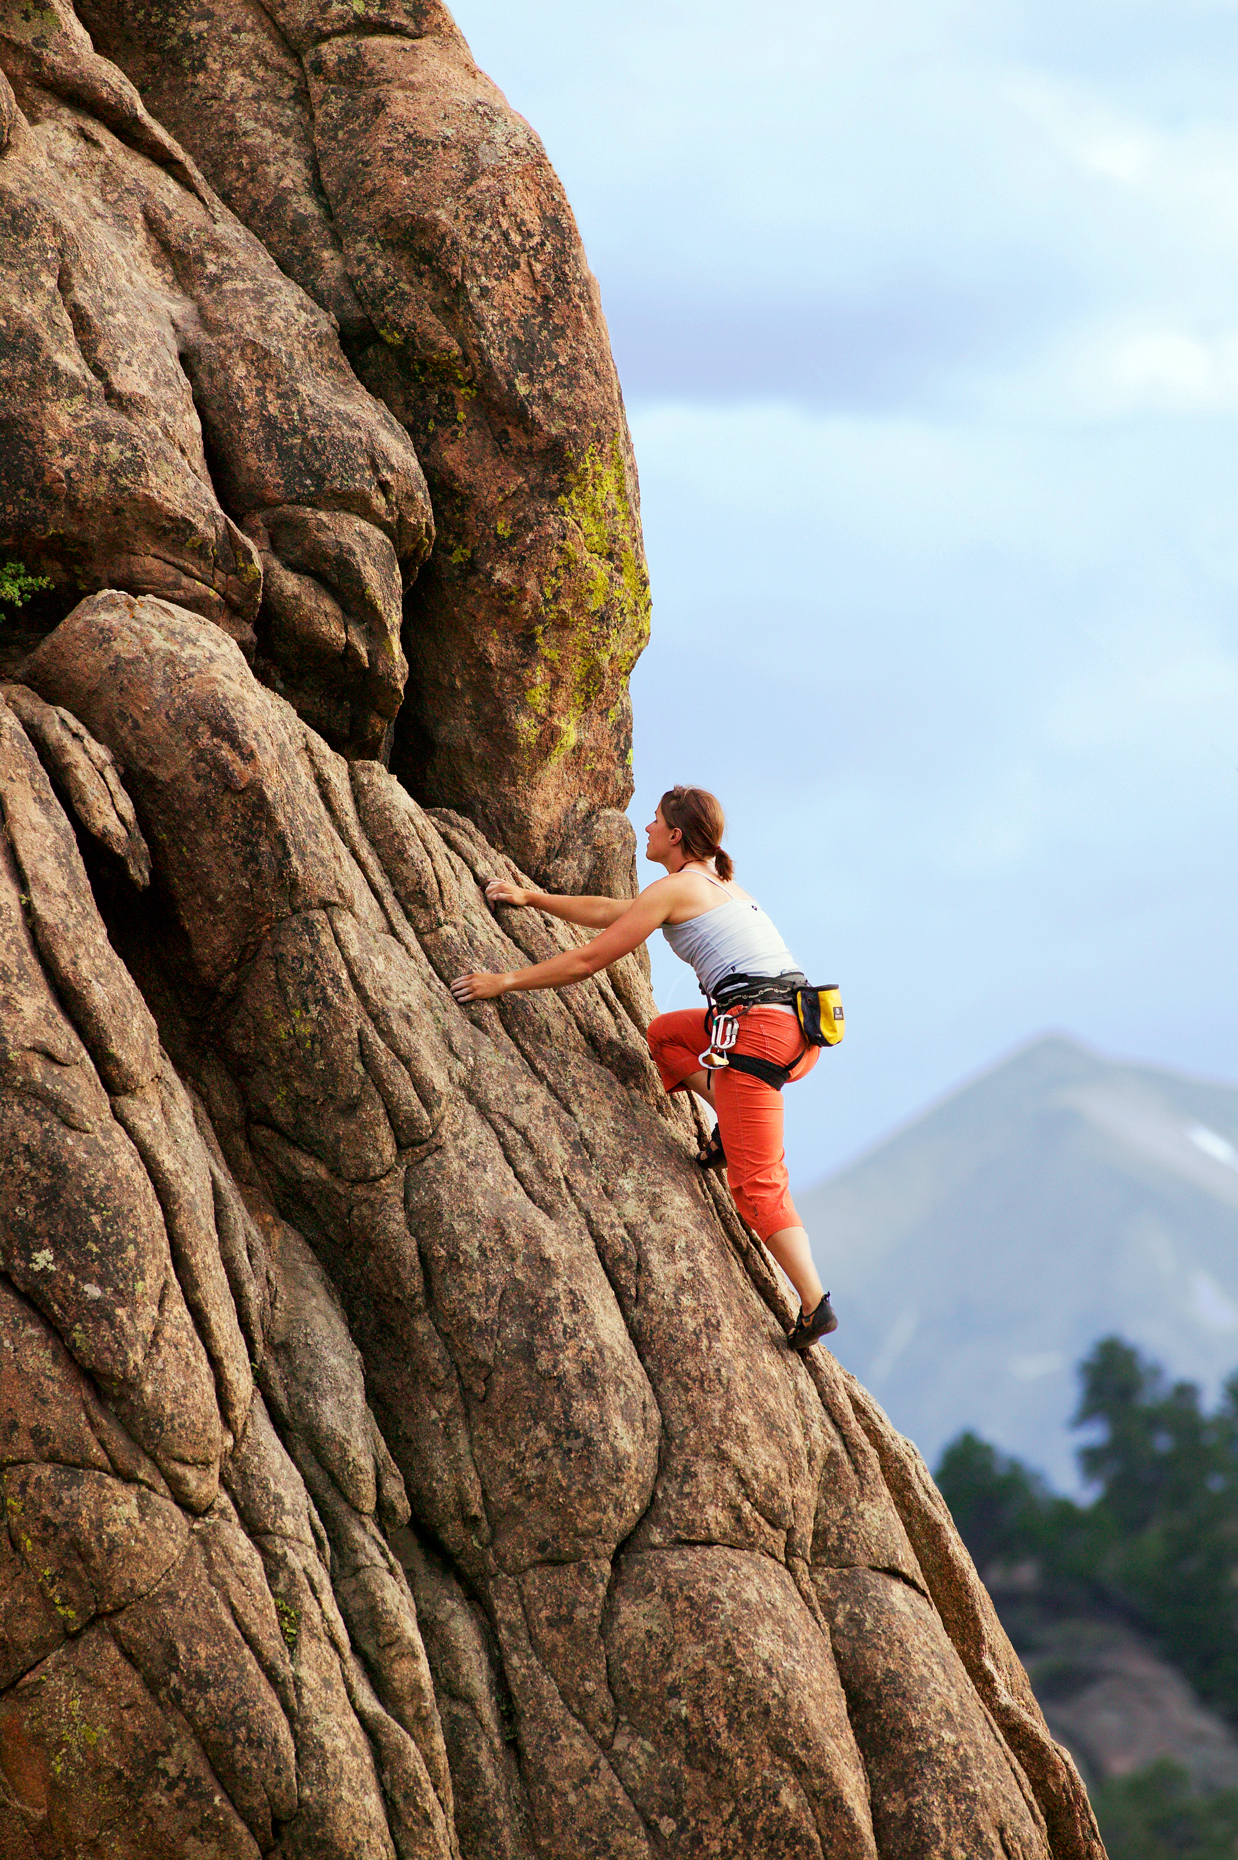 Young woman rock climbing at Elephant Rock, near Buena Vista, Colorado, USA